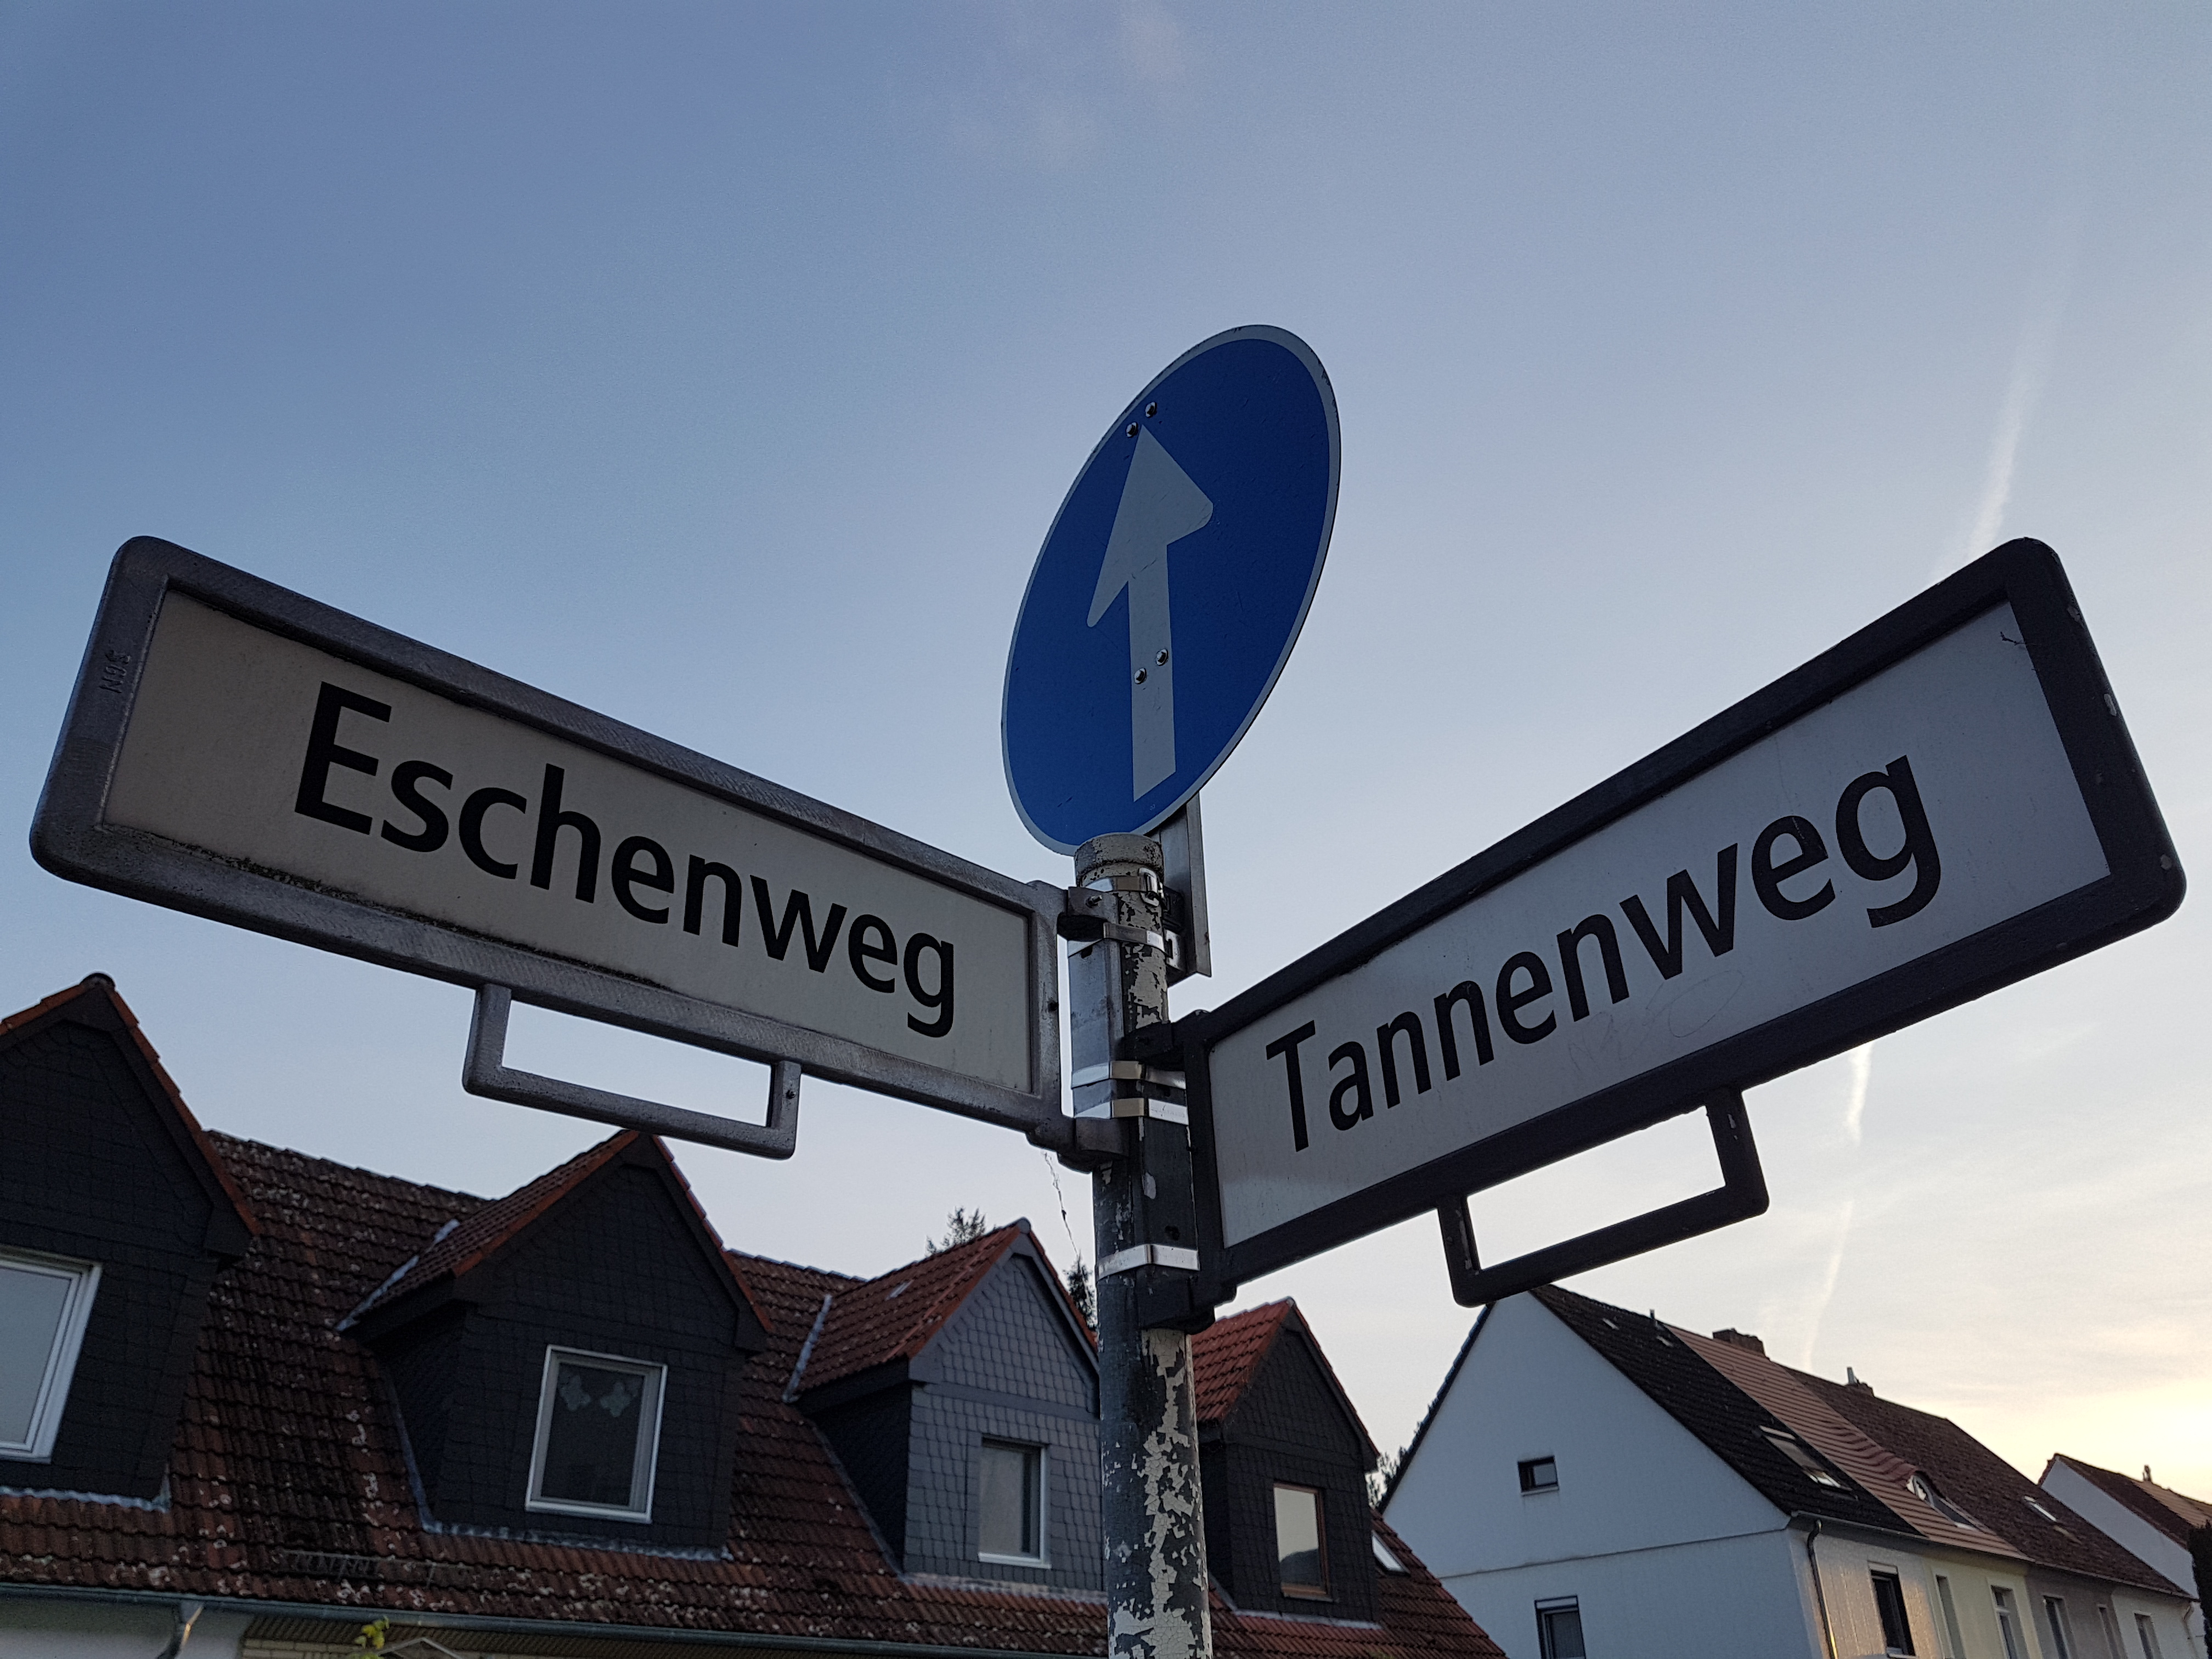 Der Praxiseingang befindet sich direkt an der Ecke zum Tannenweg - Seite Eschenweg